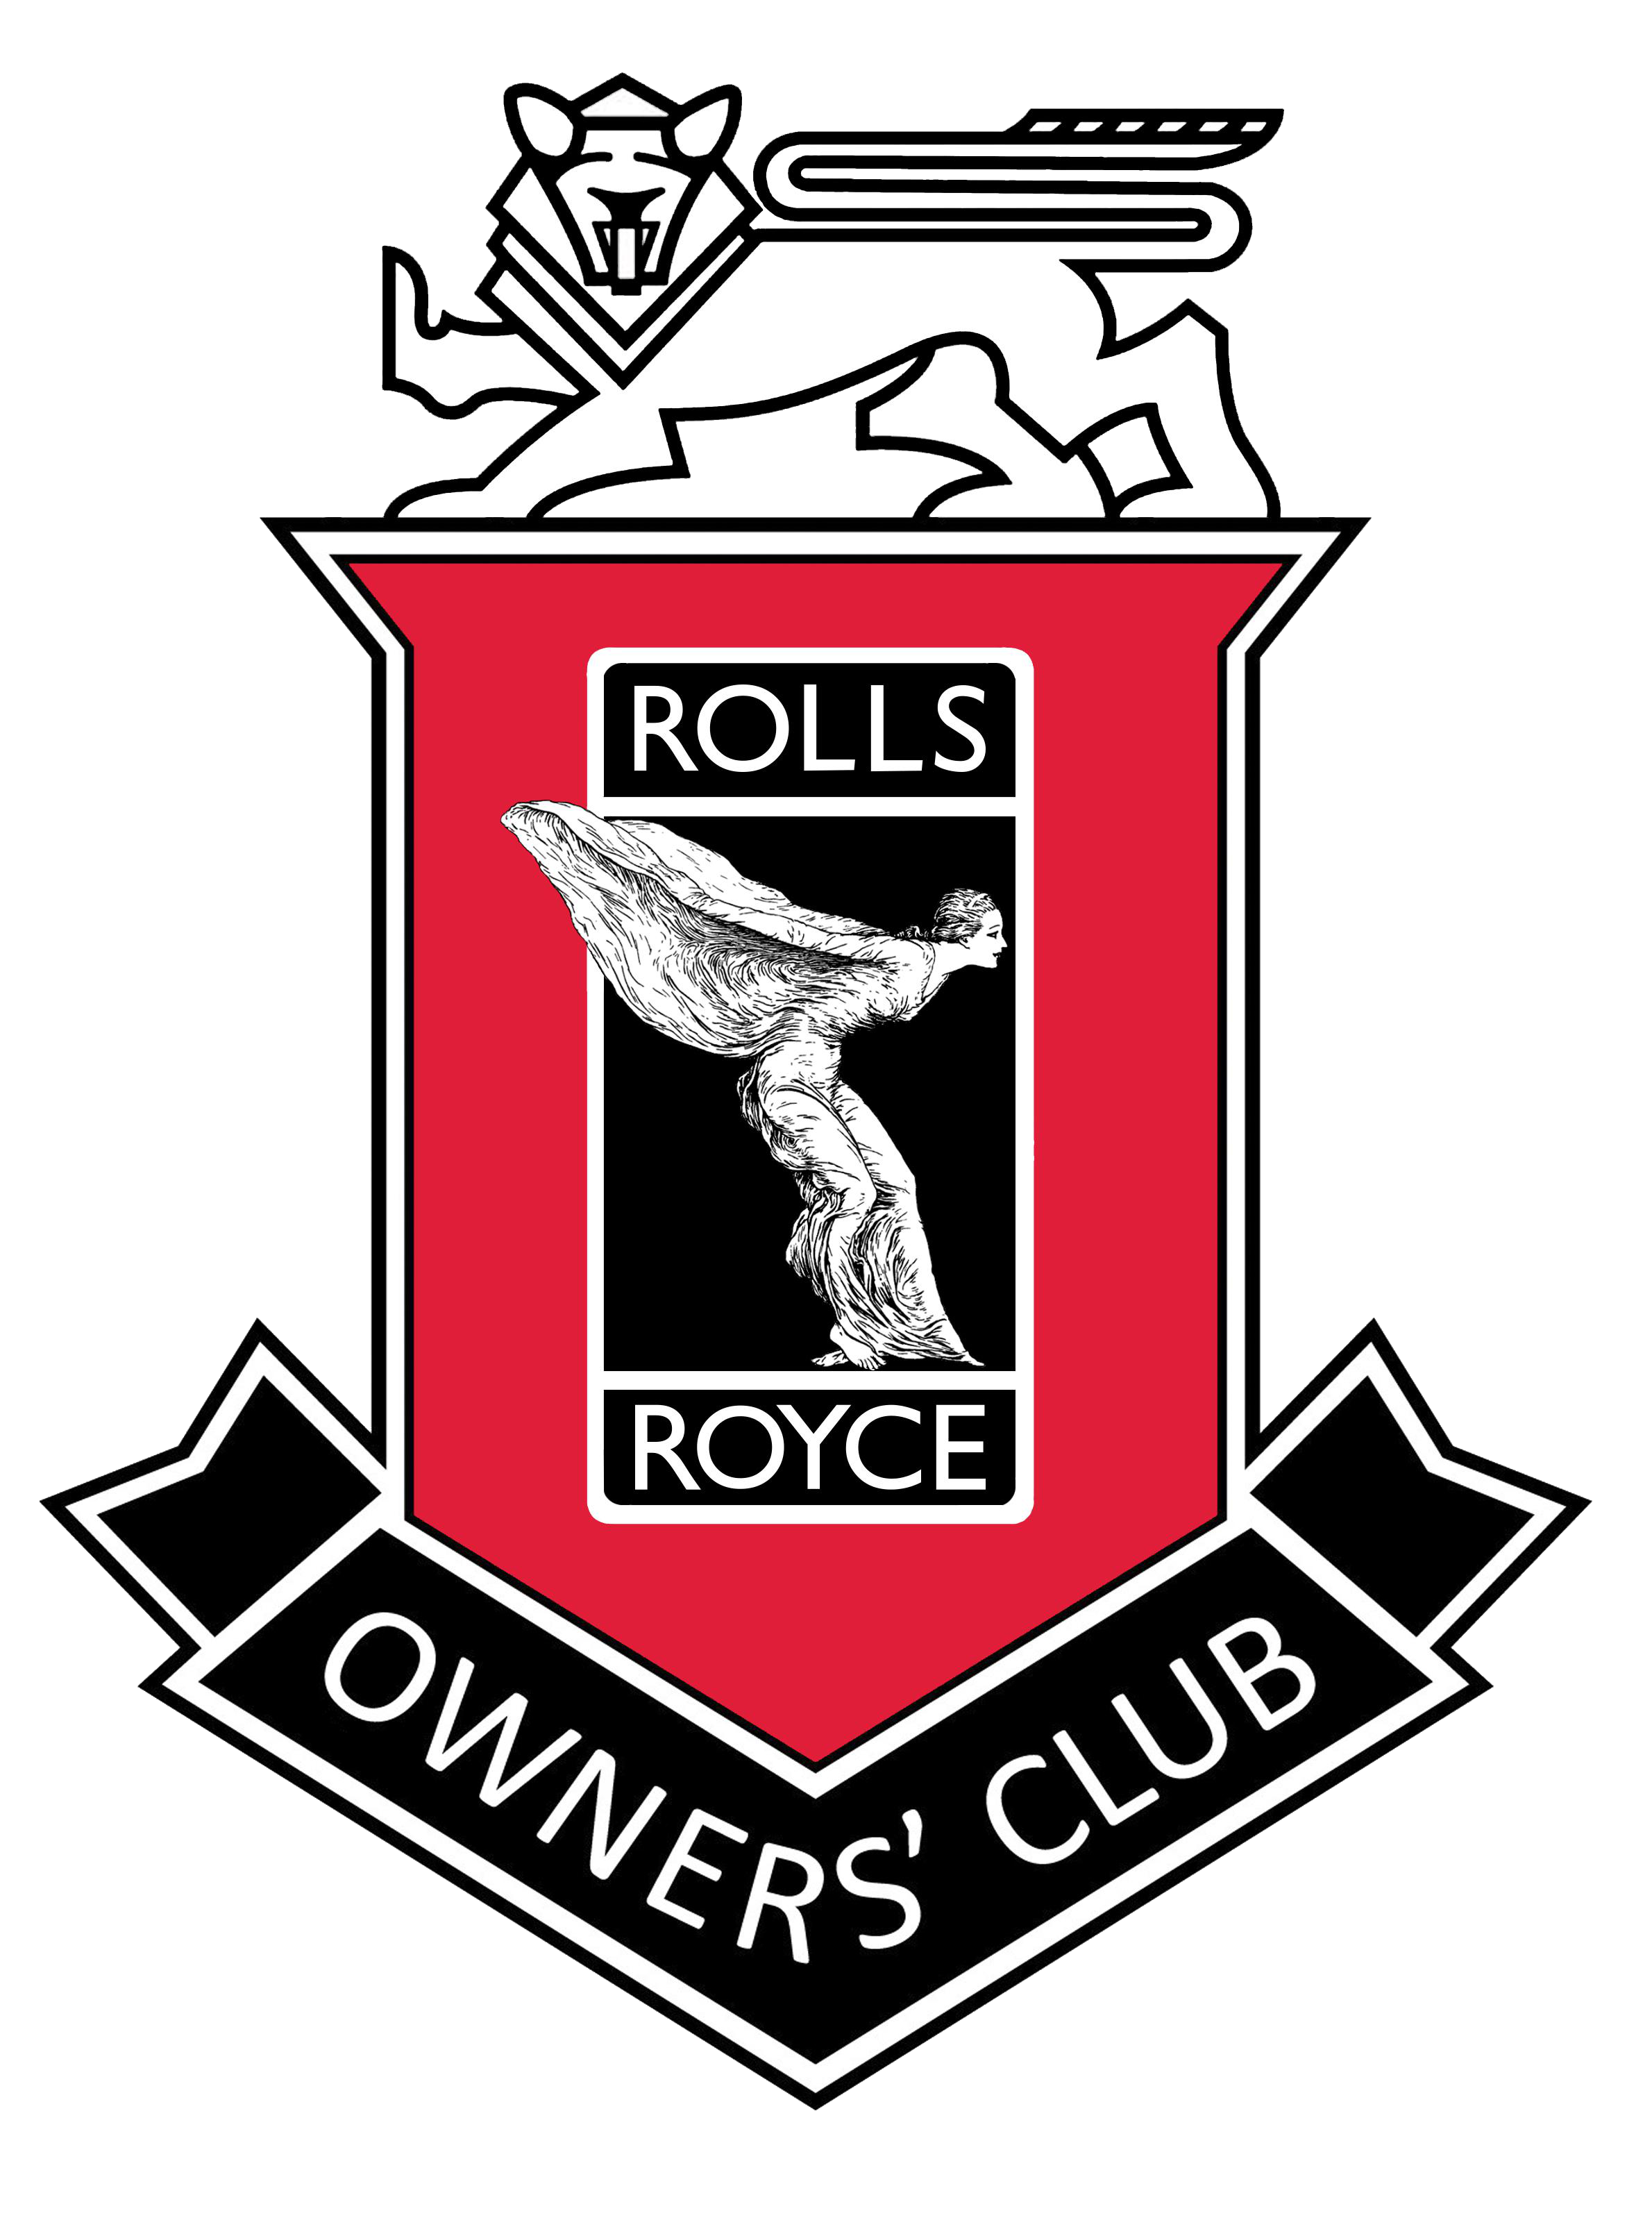 Membership Renewal — Rolls-Royce Owners' Club of Australia